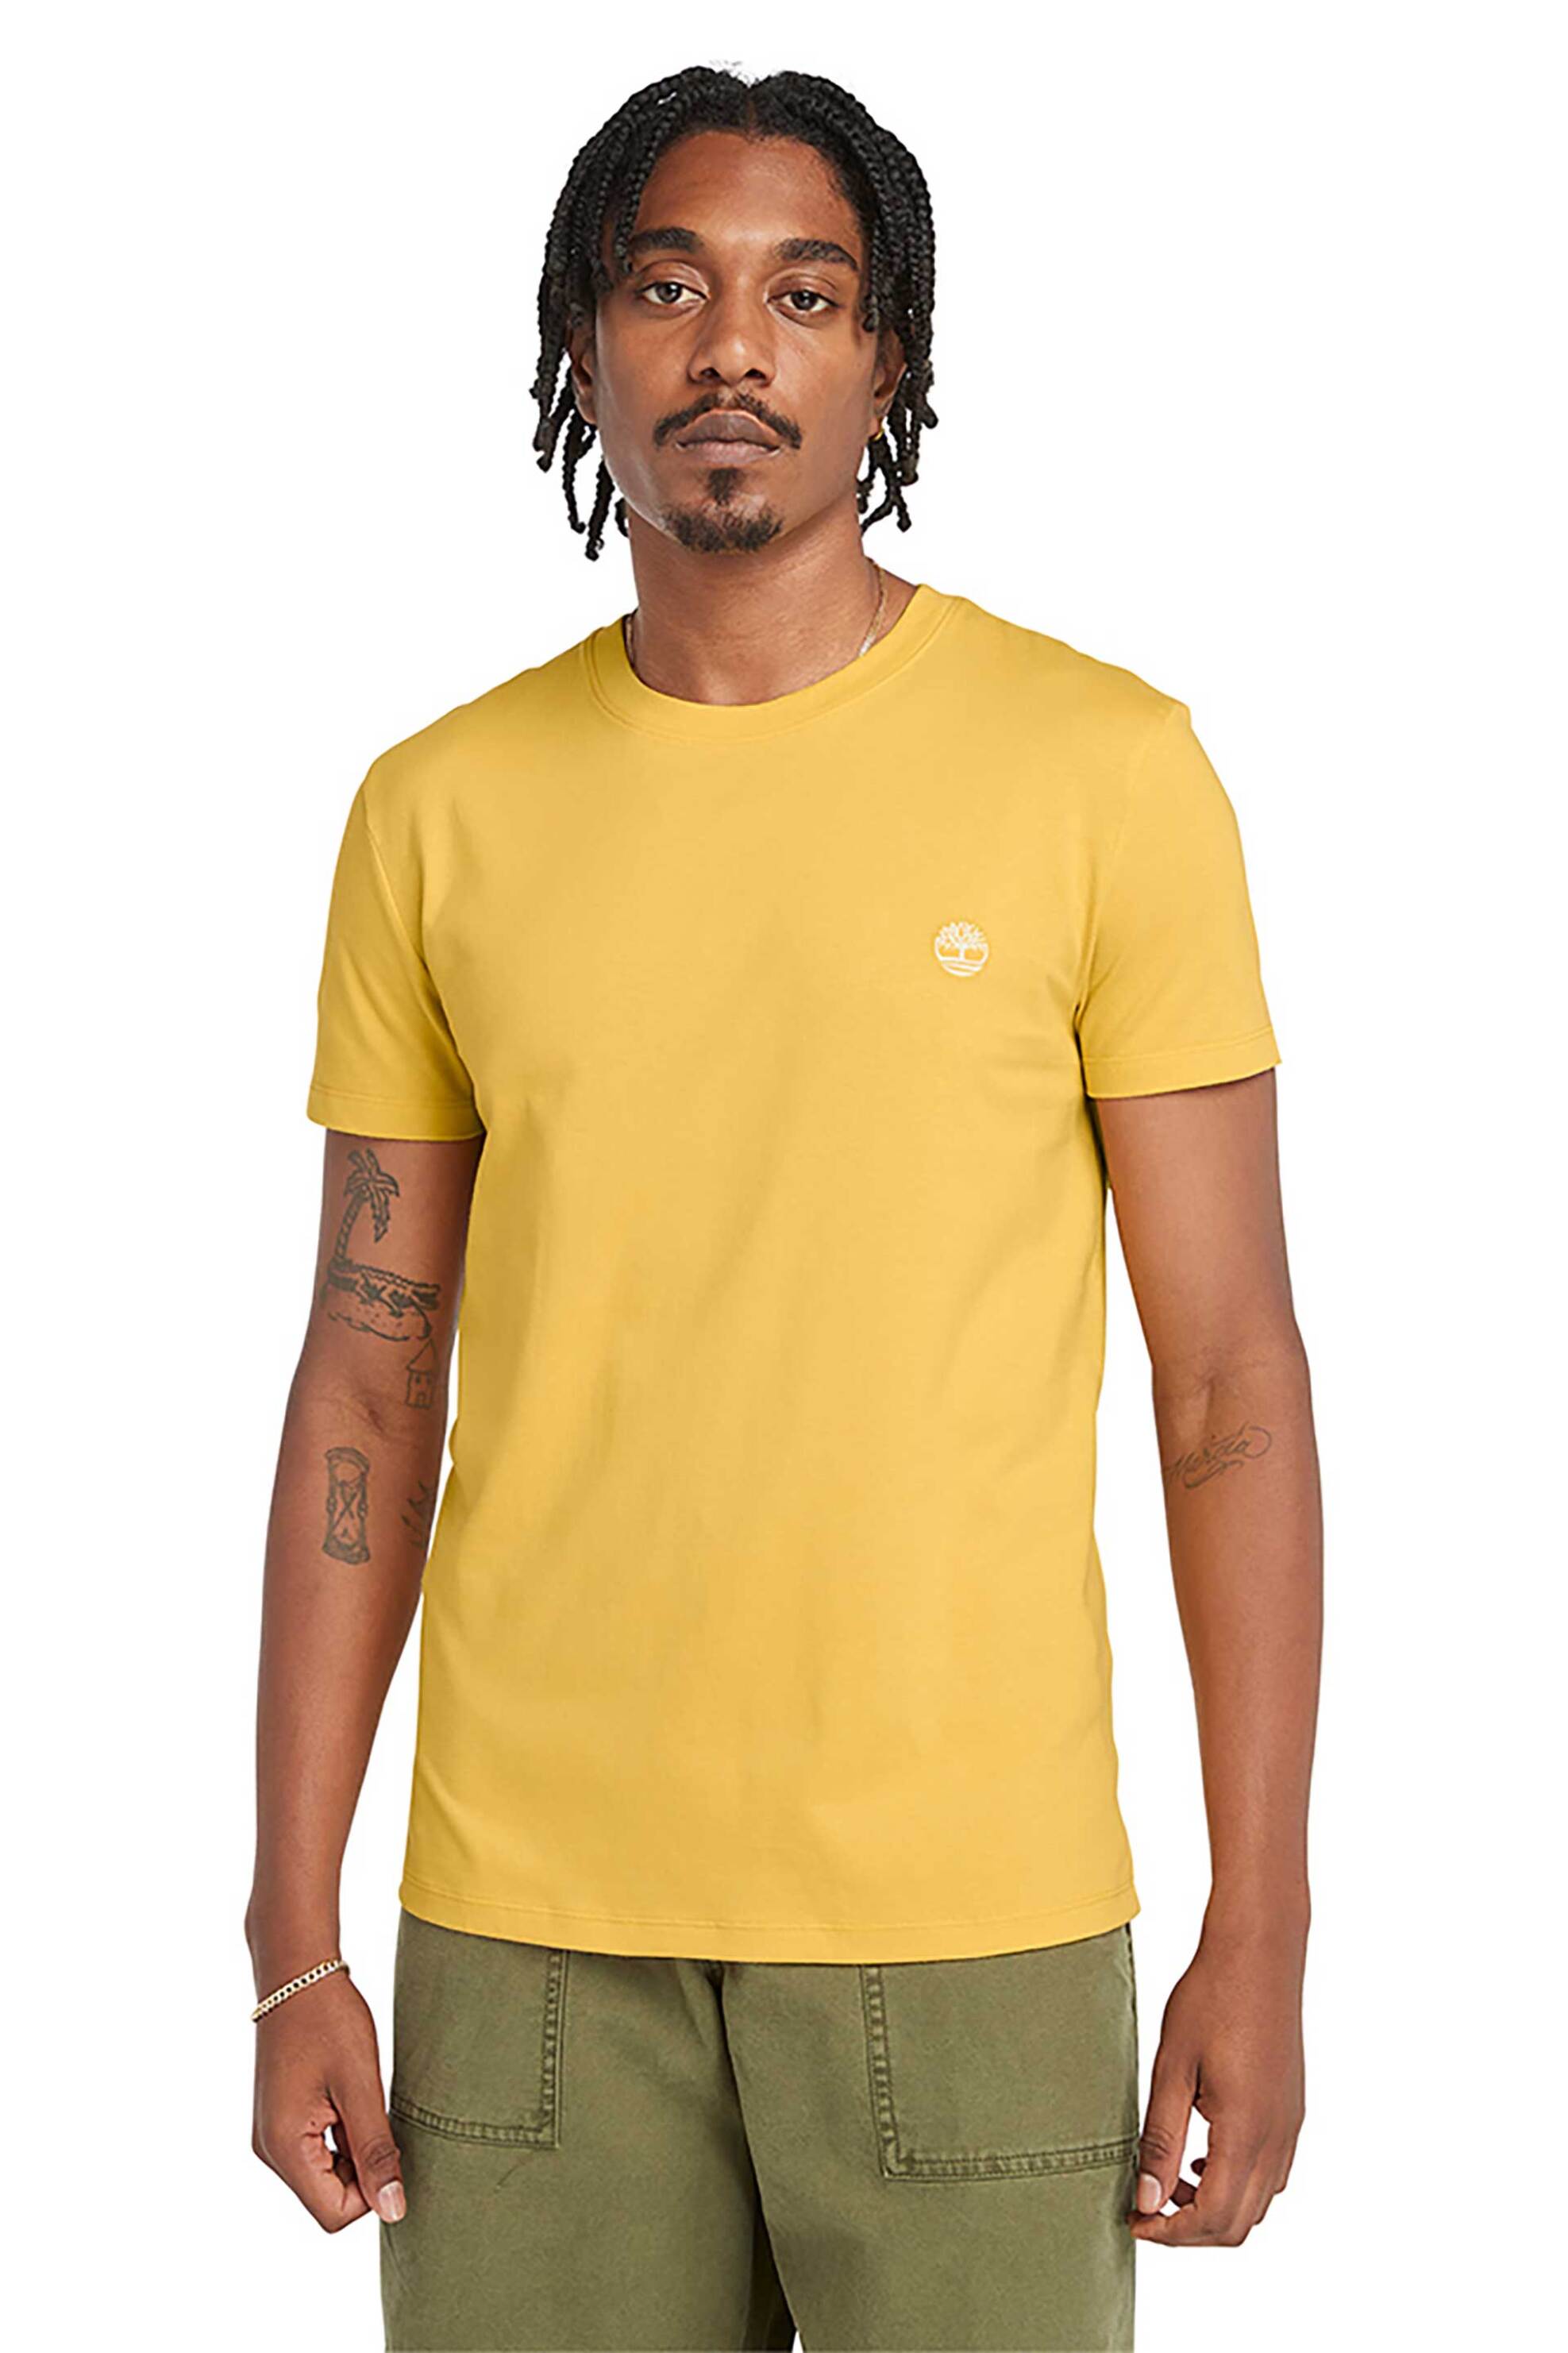 Ανδρική Μόδα > Ανδρικά Ρούχα > Ανδρικές Μπλούζες > Ανδρικά T-Shirts Timberland ανδρικό T-shirt με λογότυπο Slim Fit "Ss Dunstan River" - TB0A2BPREG41 Κίτρινο